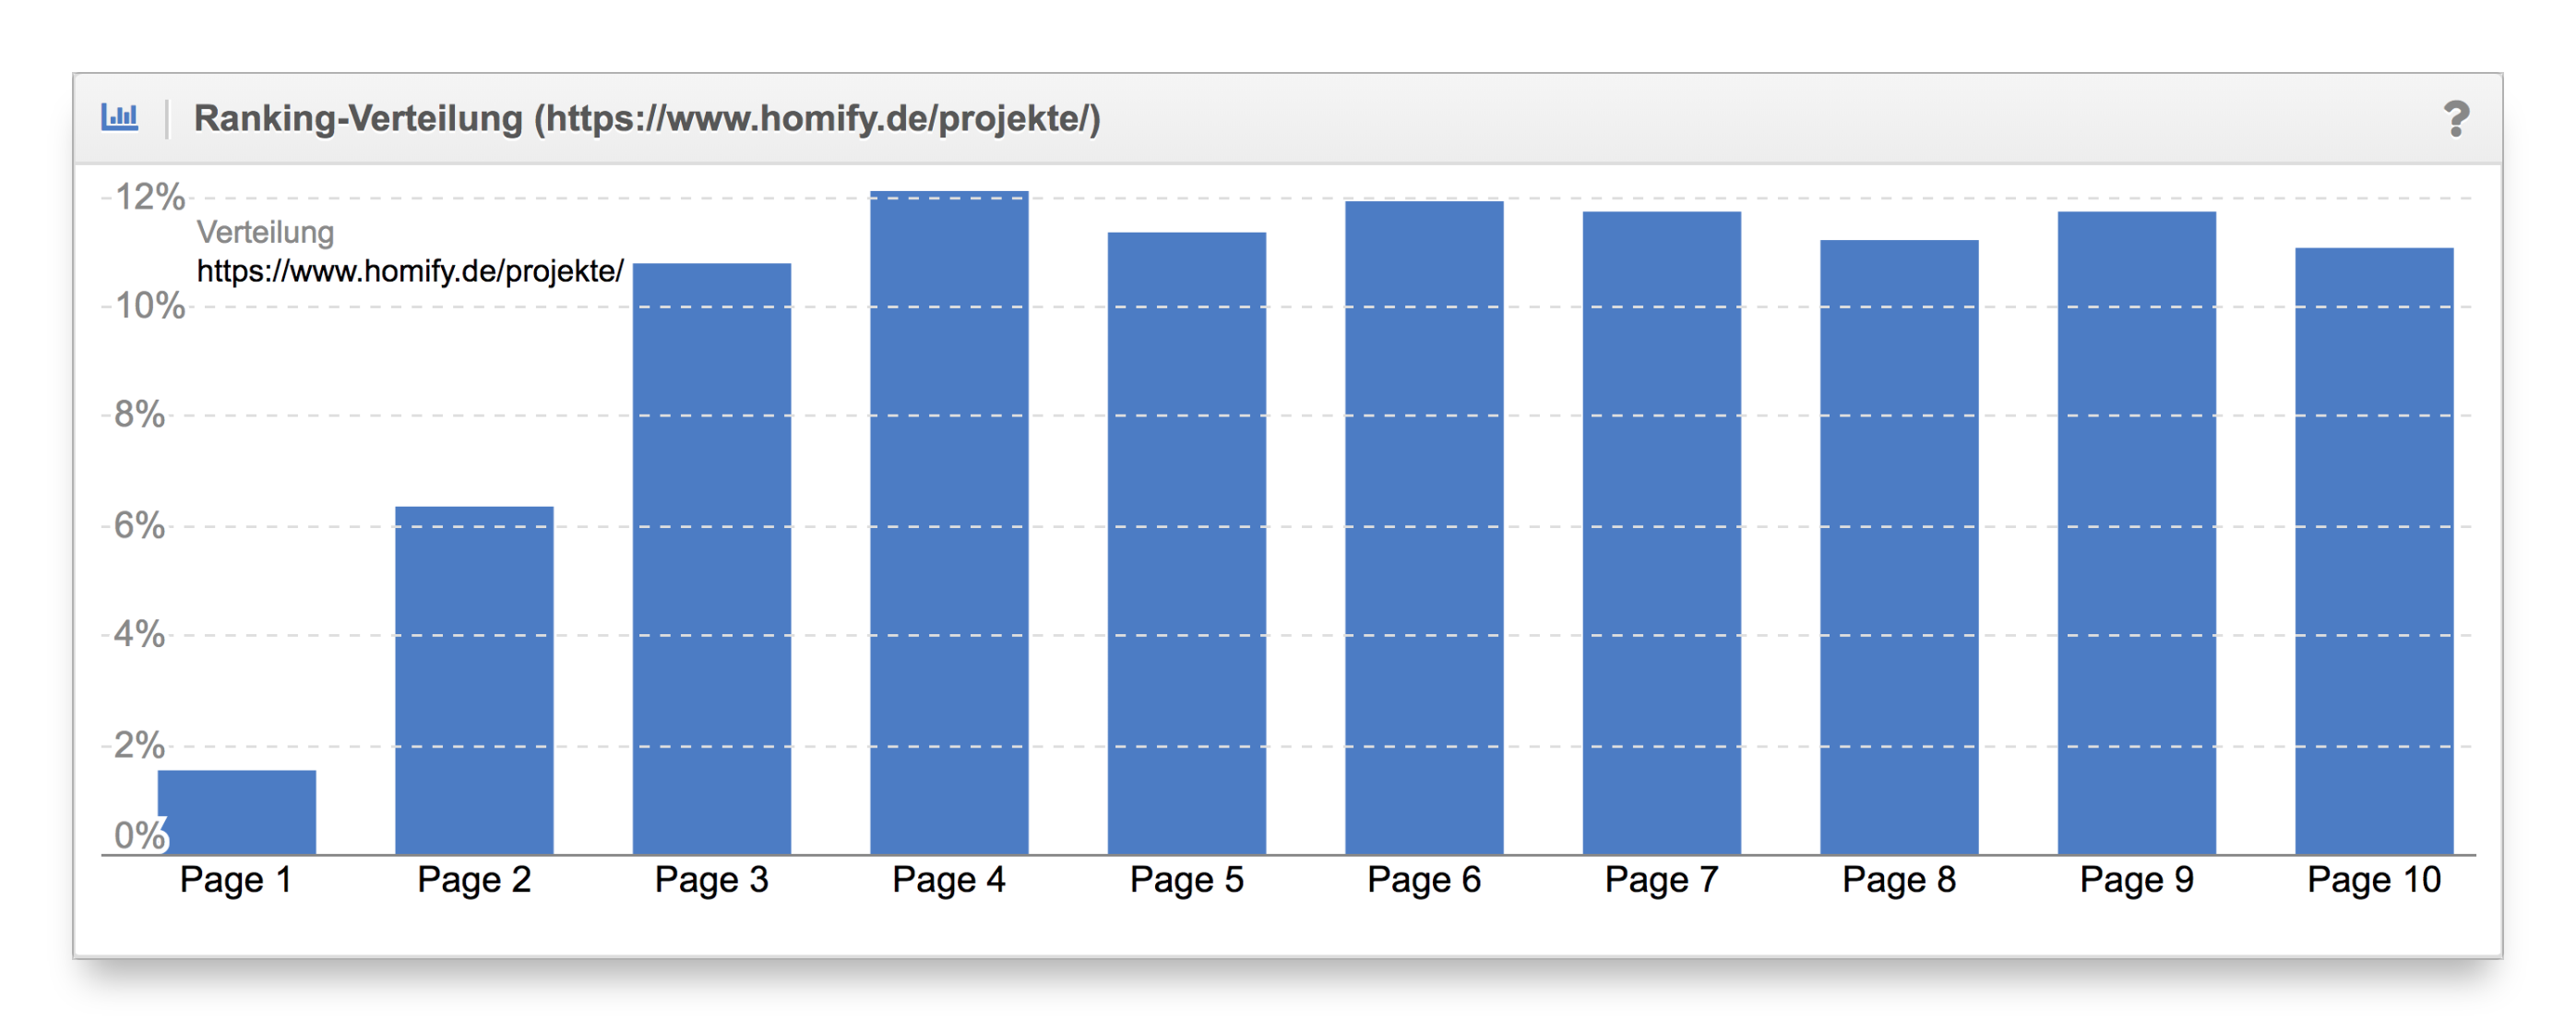 Vergleich Ranking-Verteilung Content-Formate homify.de